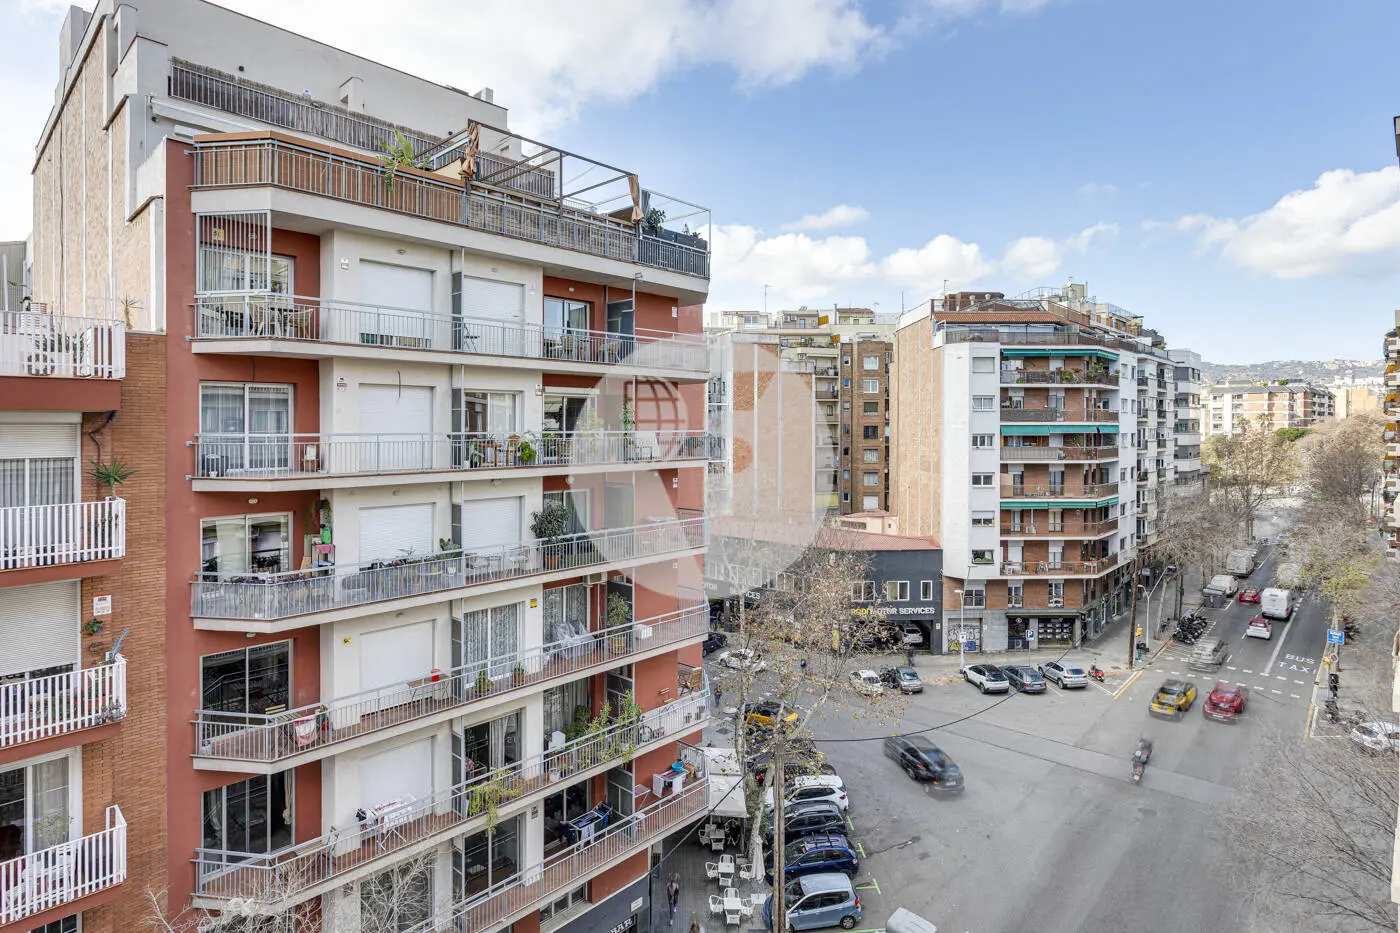 Piso de 3 habitaciones ubicado en el barrio de la Nova Esquerra de l'Eixample de Barcelona. 8